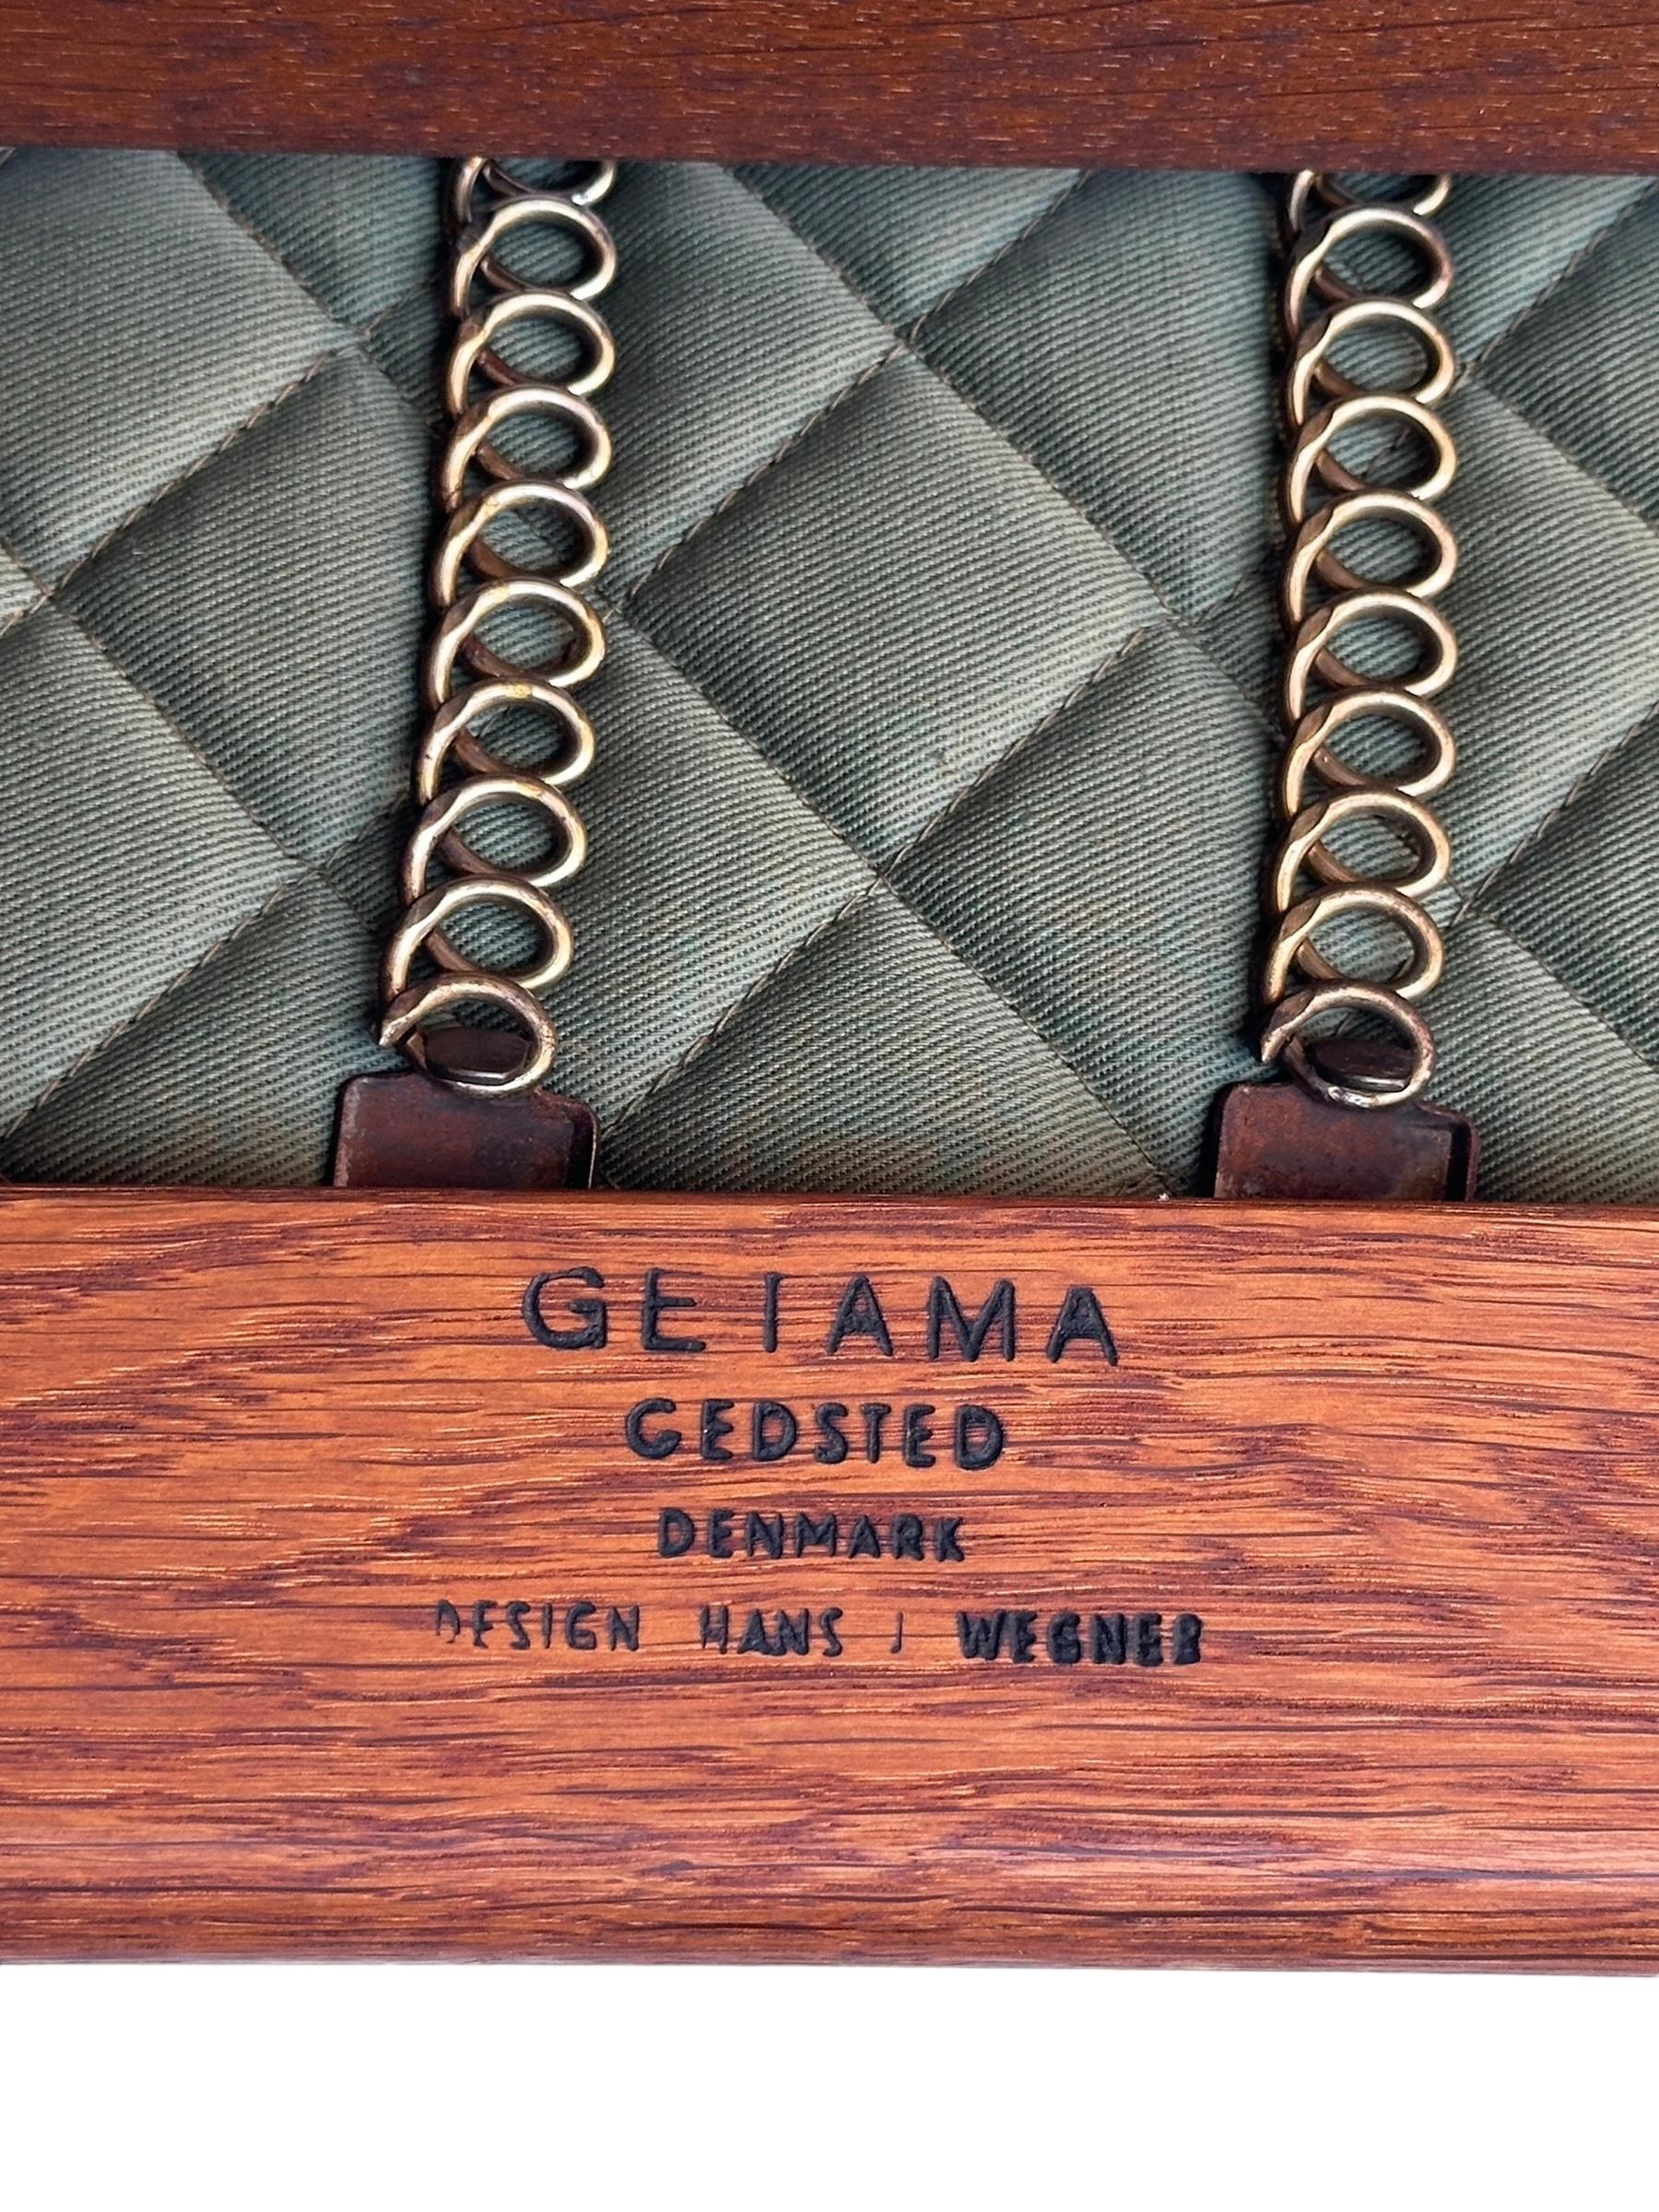 Hans J. Wegner for Getama Signed Sofa with new Mataram Upholstery For Sale 13